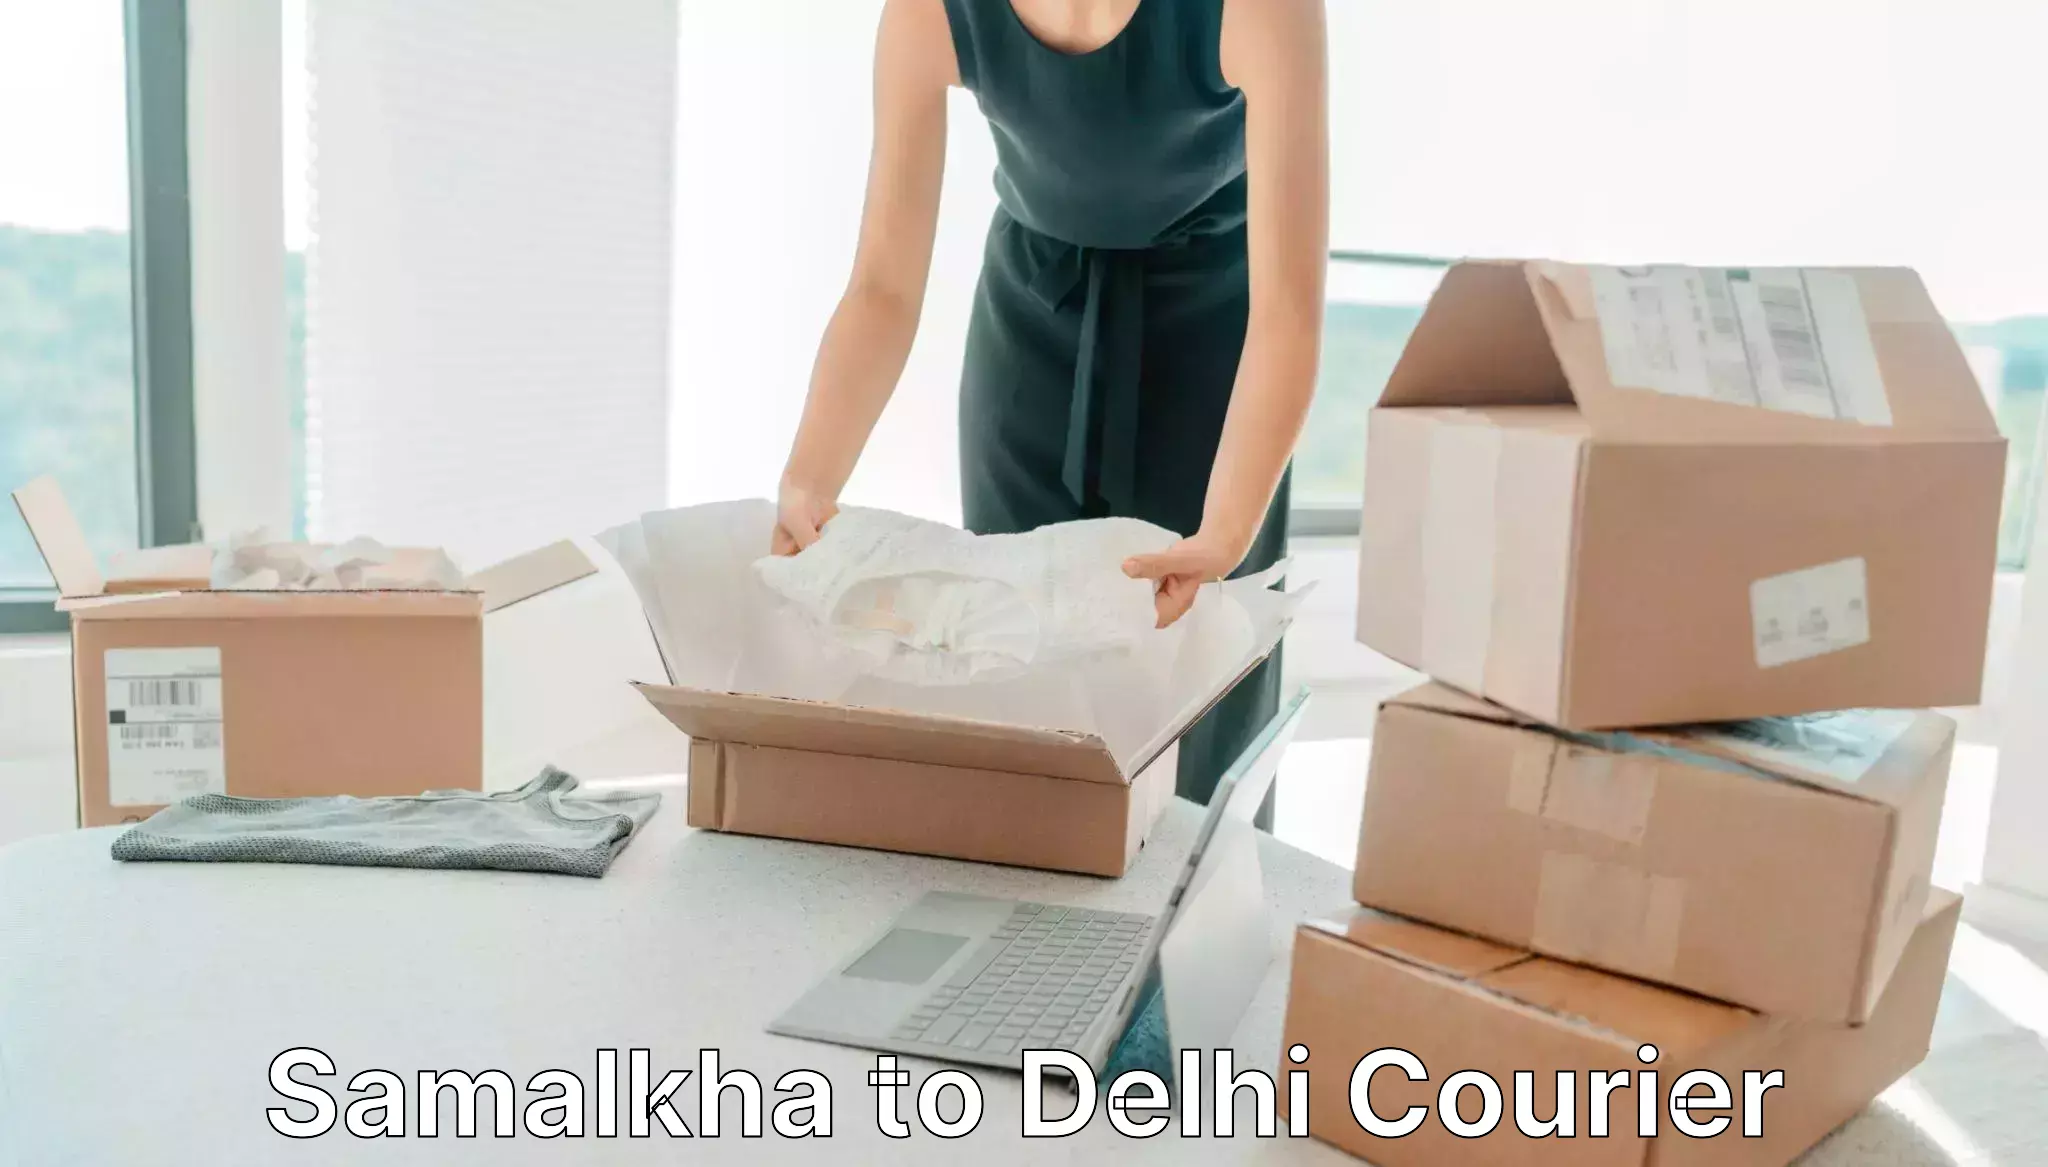 Express courier capabilities Samalkha to University of Delhi